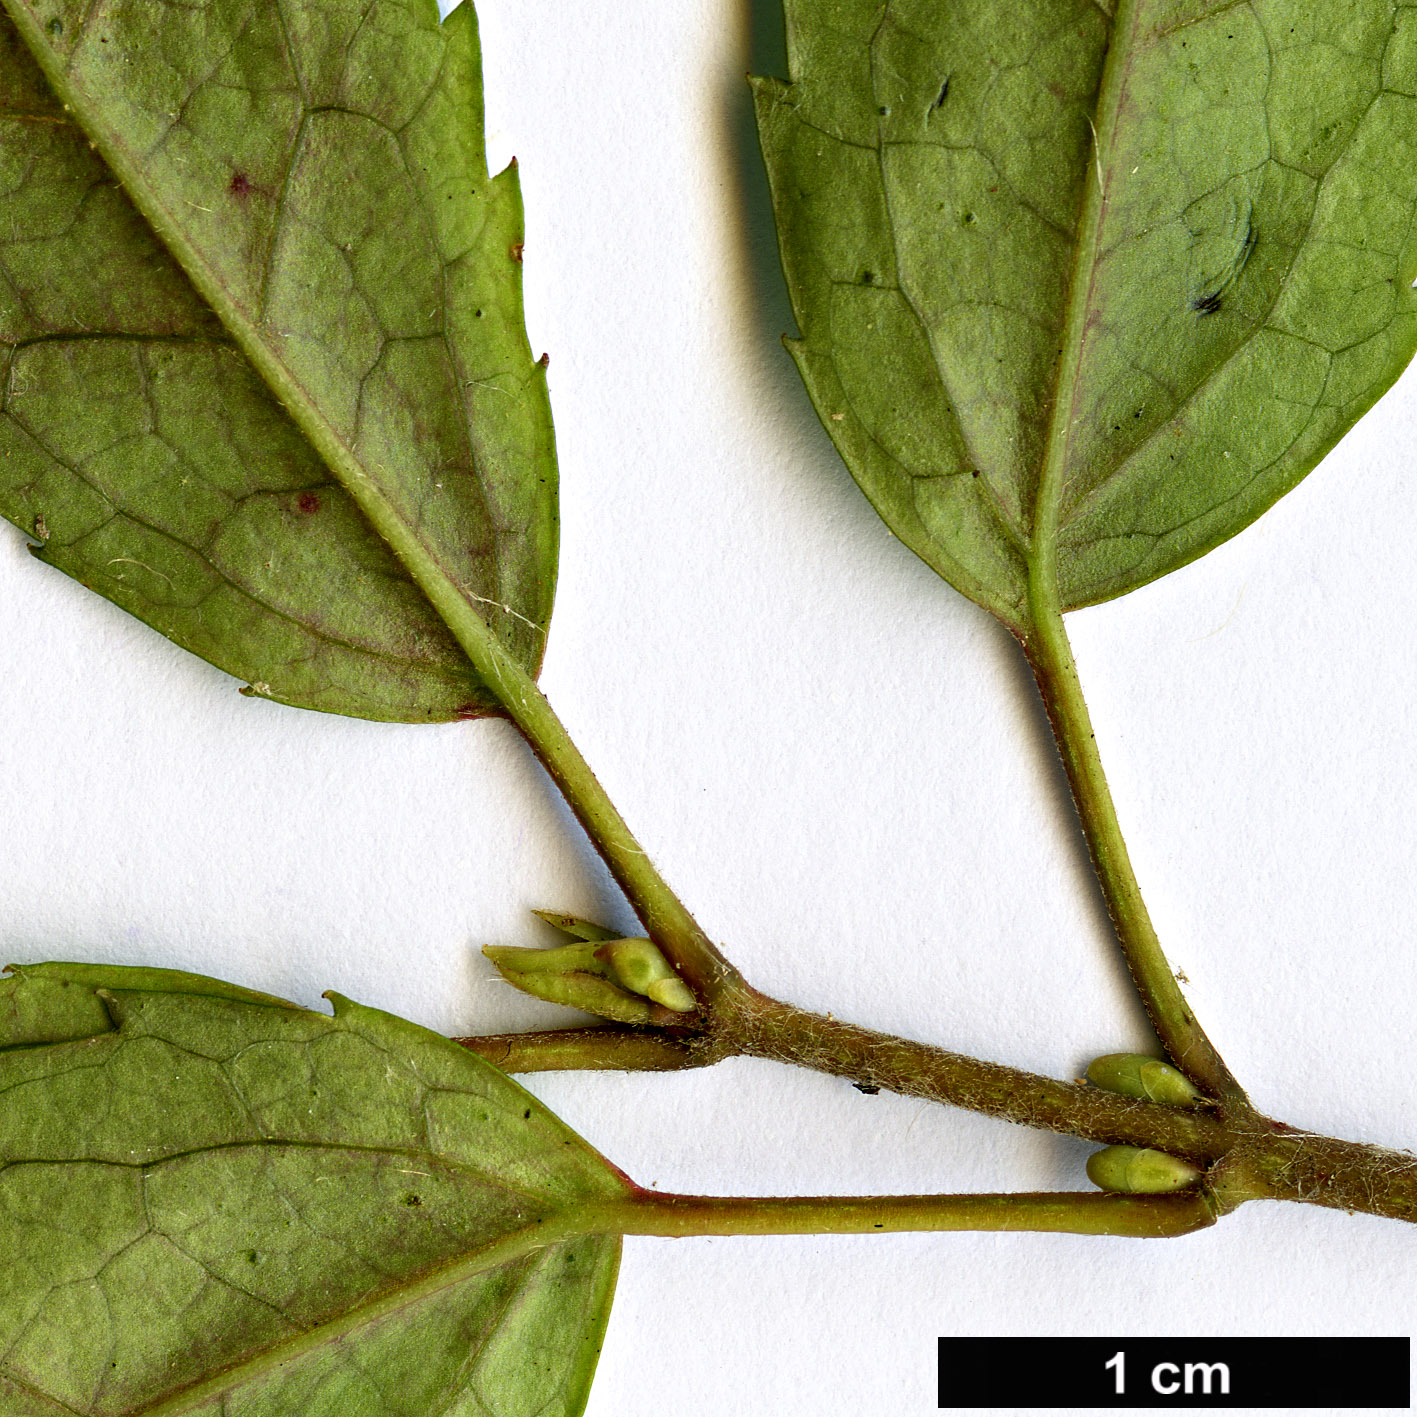 High resolution image: Family: Elaeocarpaceae - Genus: Aristotelia - Taxon: peduncularis